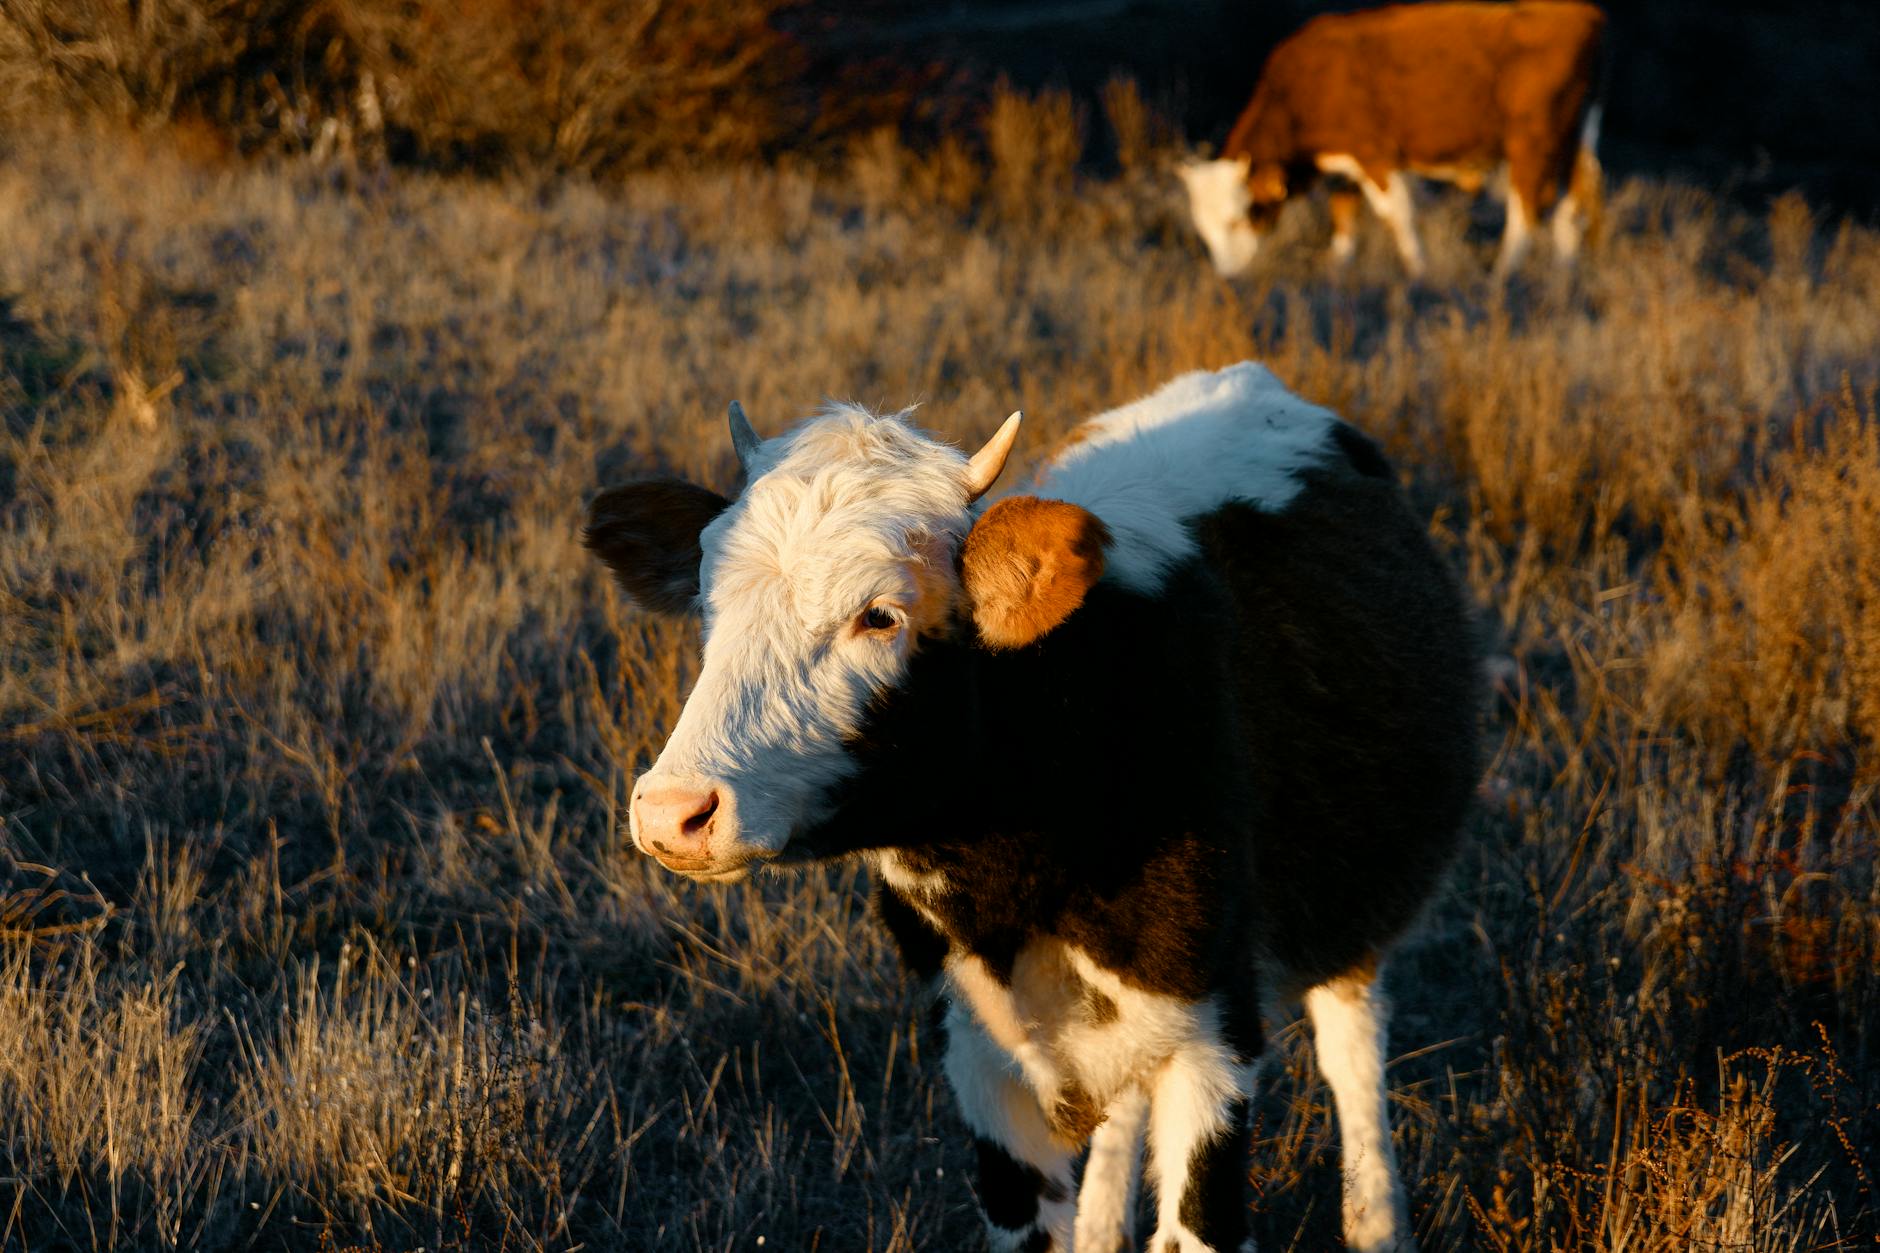 Wearable Sensors for Livestock